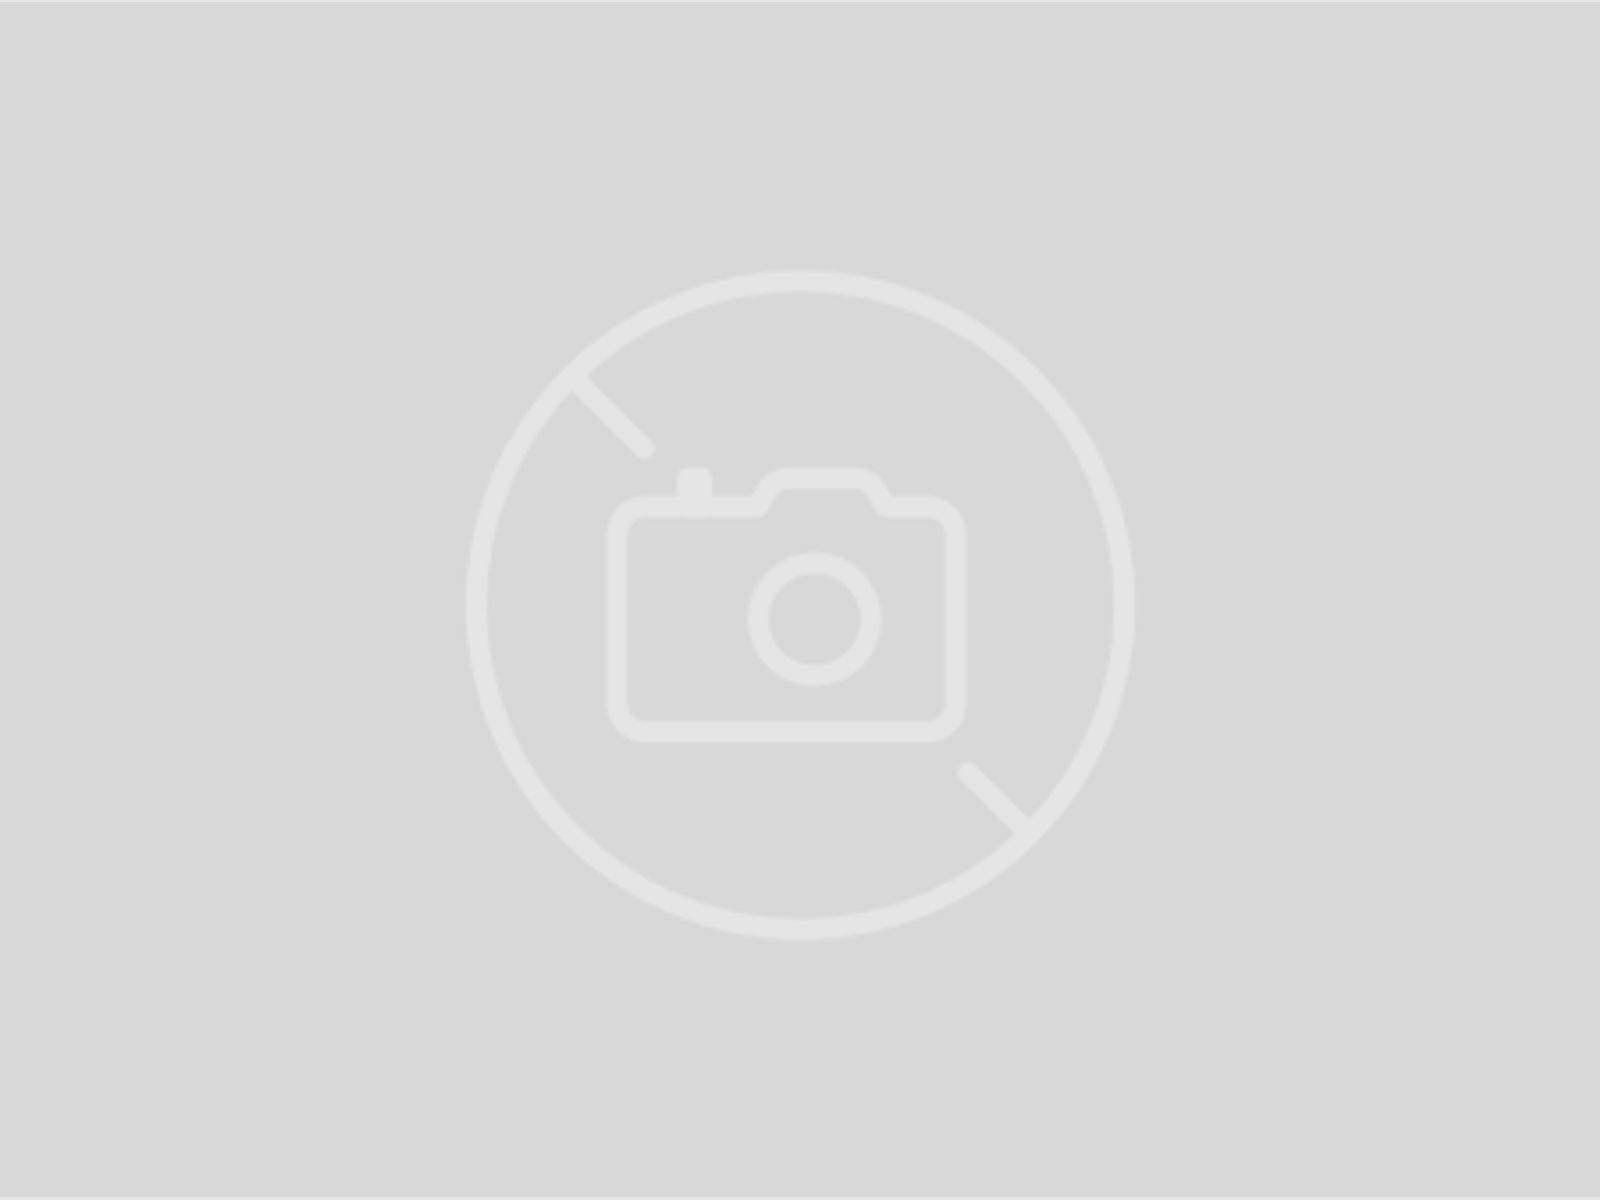 Leica Zielfernrohr Fortis 6 2-12x50 i ohne Schiene